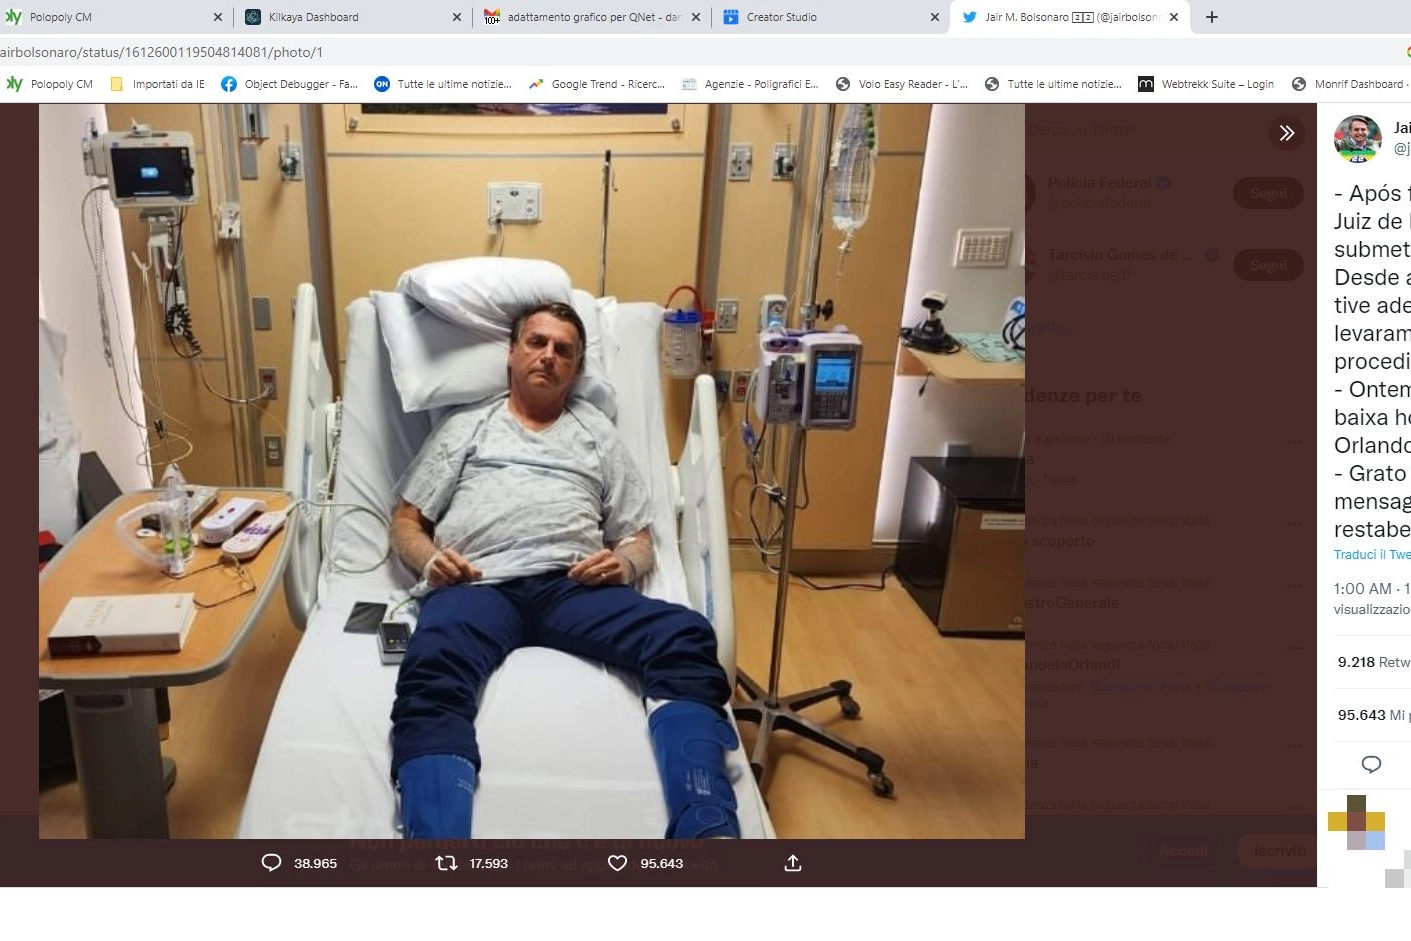 Bolsonaro posta sui social la foto dall'ospedale in cui è ricoverato (Twitter)